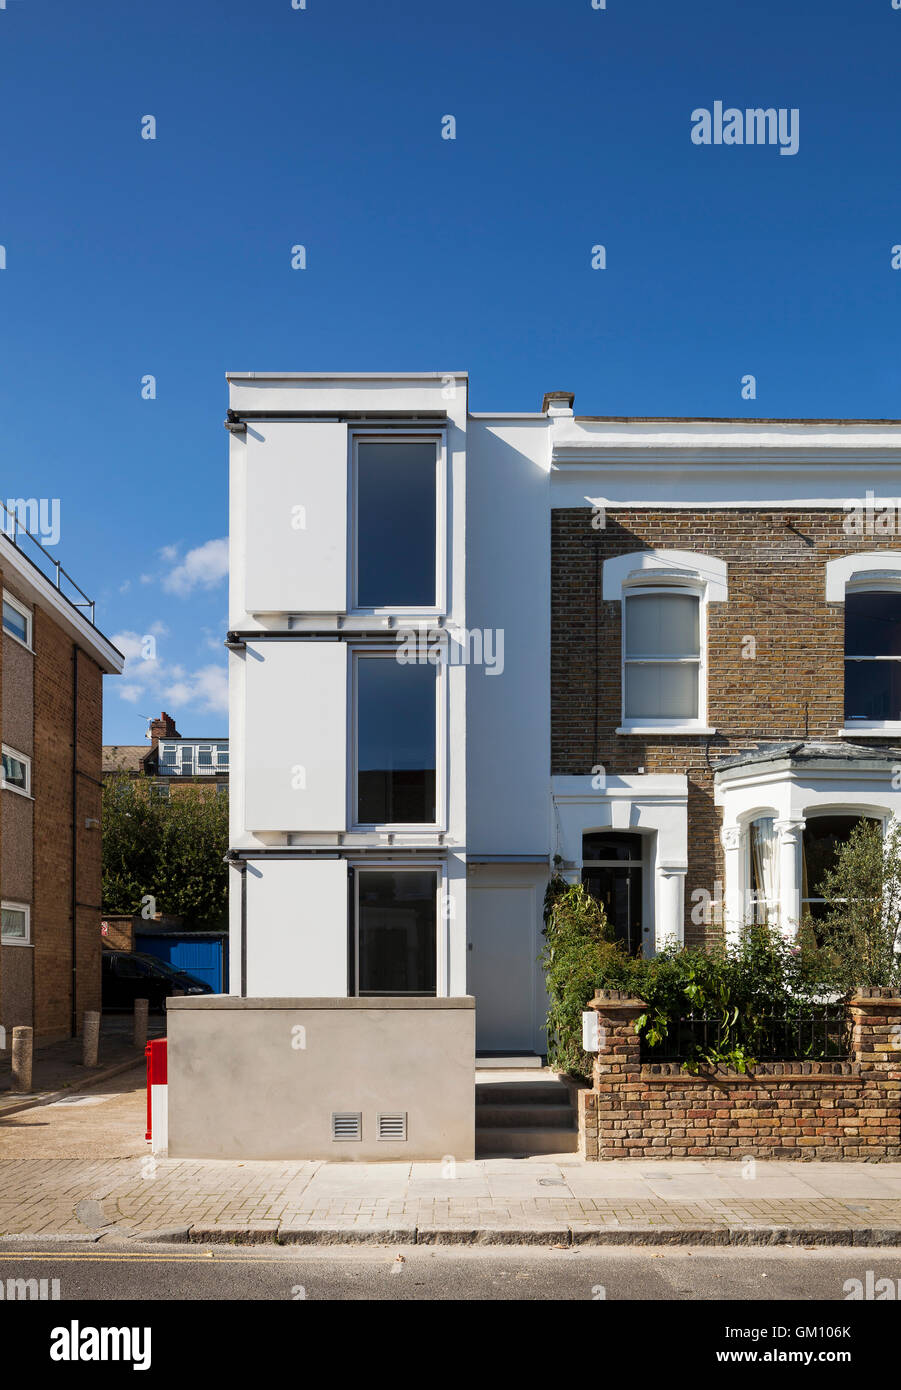 Tag Zeit mit Fensterläden aufzurufen. Das Aktivhaus, London, Vereinigtes Königreich. Architekt: Prof. Stephan Gage, 2013. Stockfoto